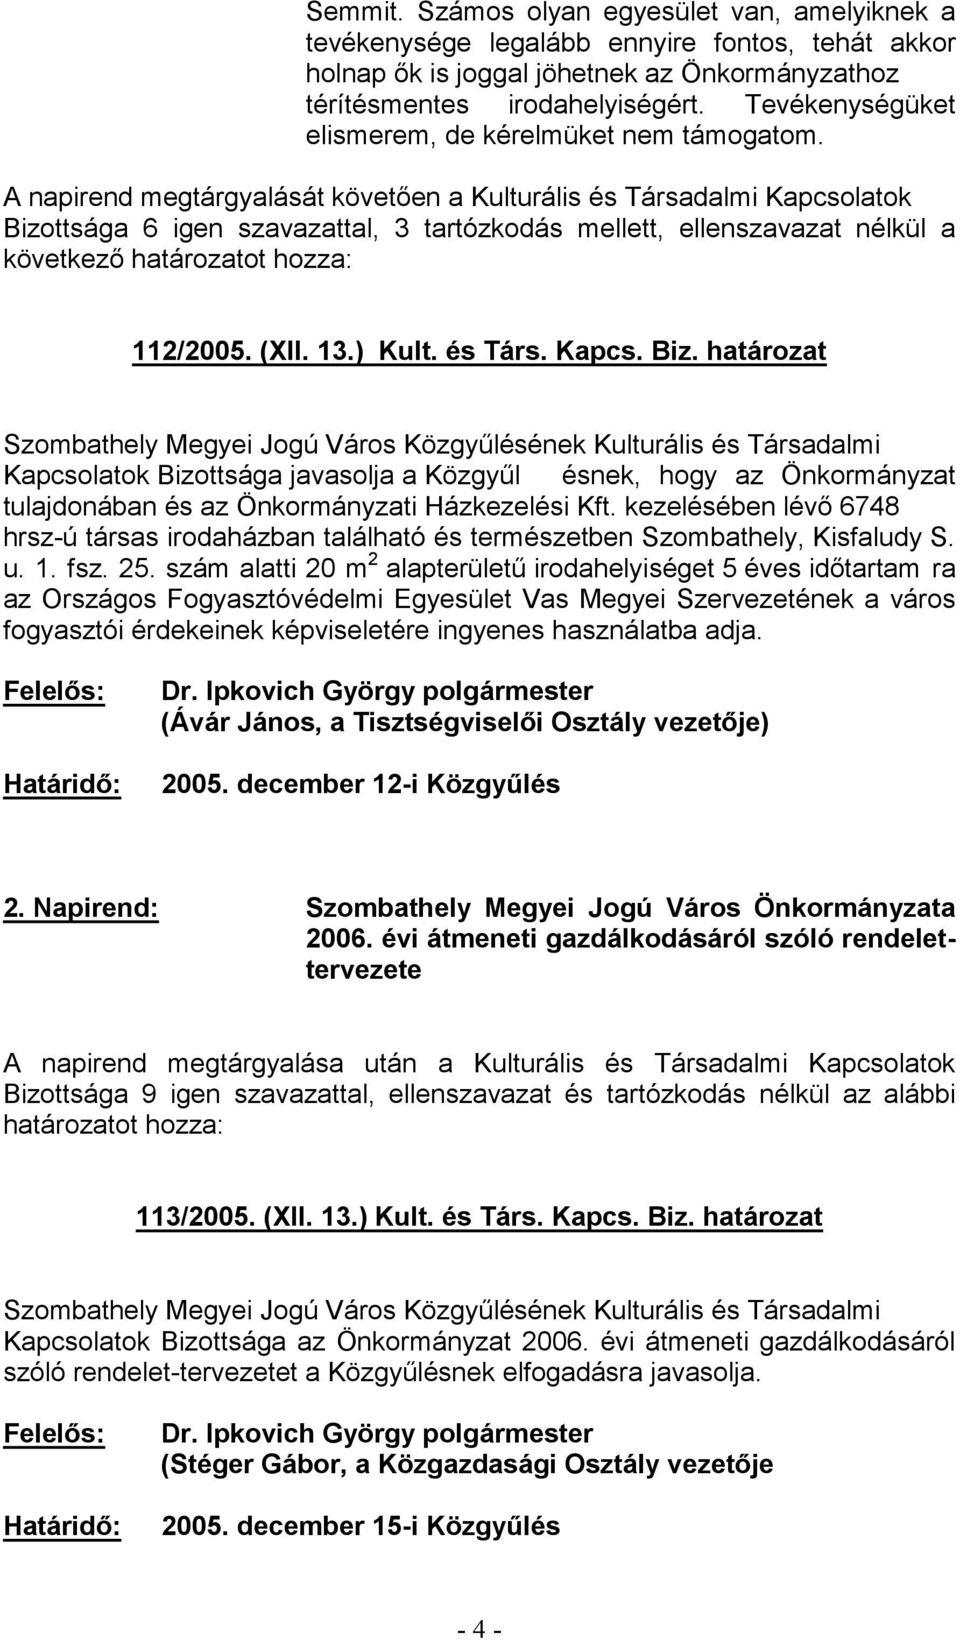 határozat ésnek, hogy az Önkormányzat hrsz-ú társas irodaházban található és természetben Szombathely, Kisfaludy S. u. 1. fsz. 25.